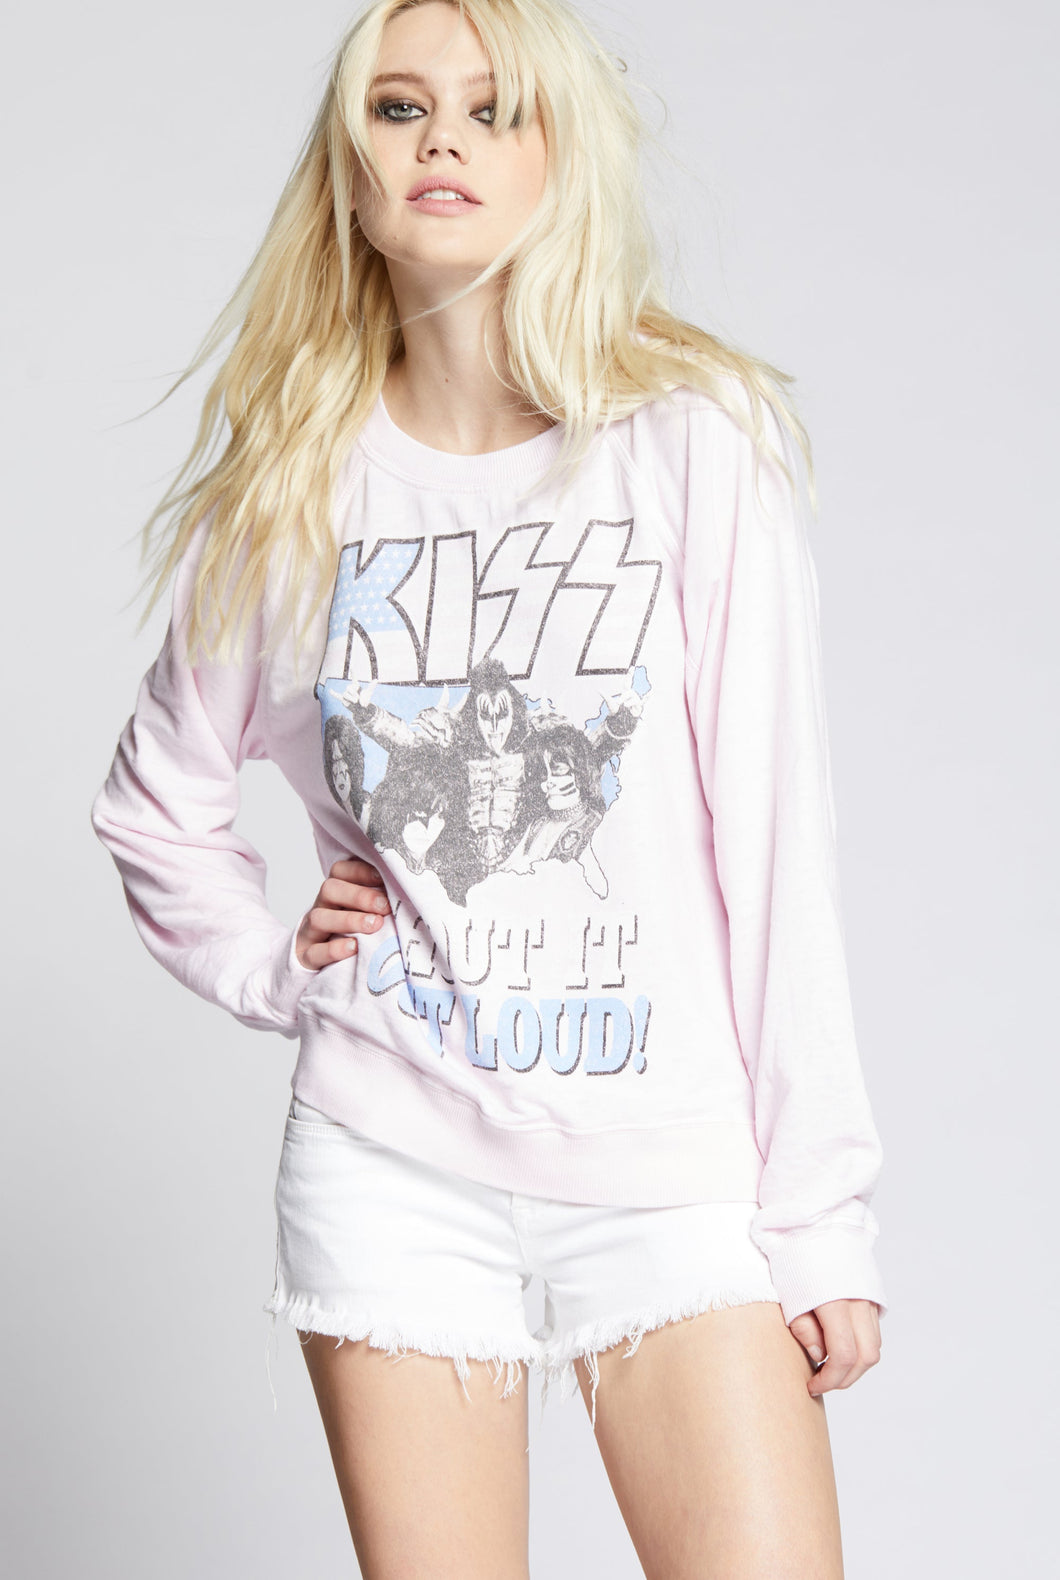 Kiss Shout it Out Loud Sweatshirt